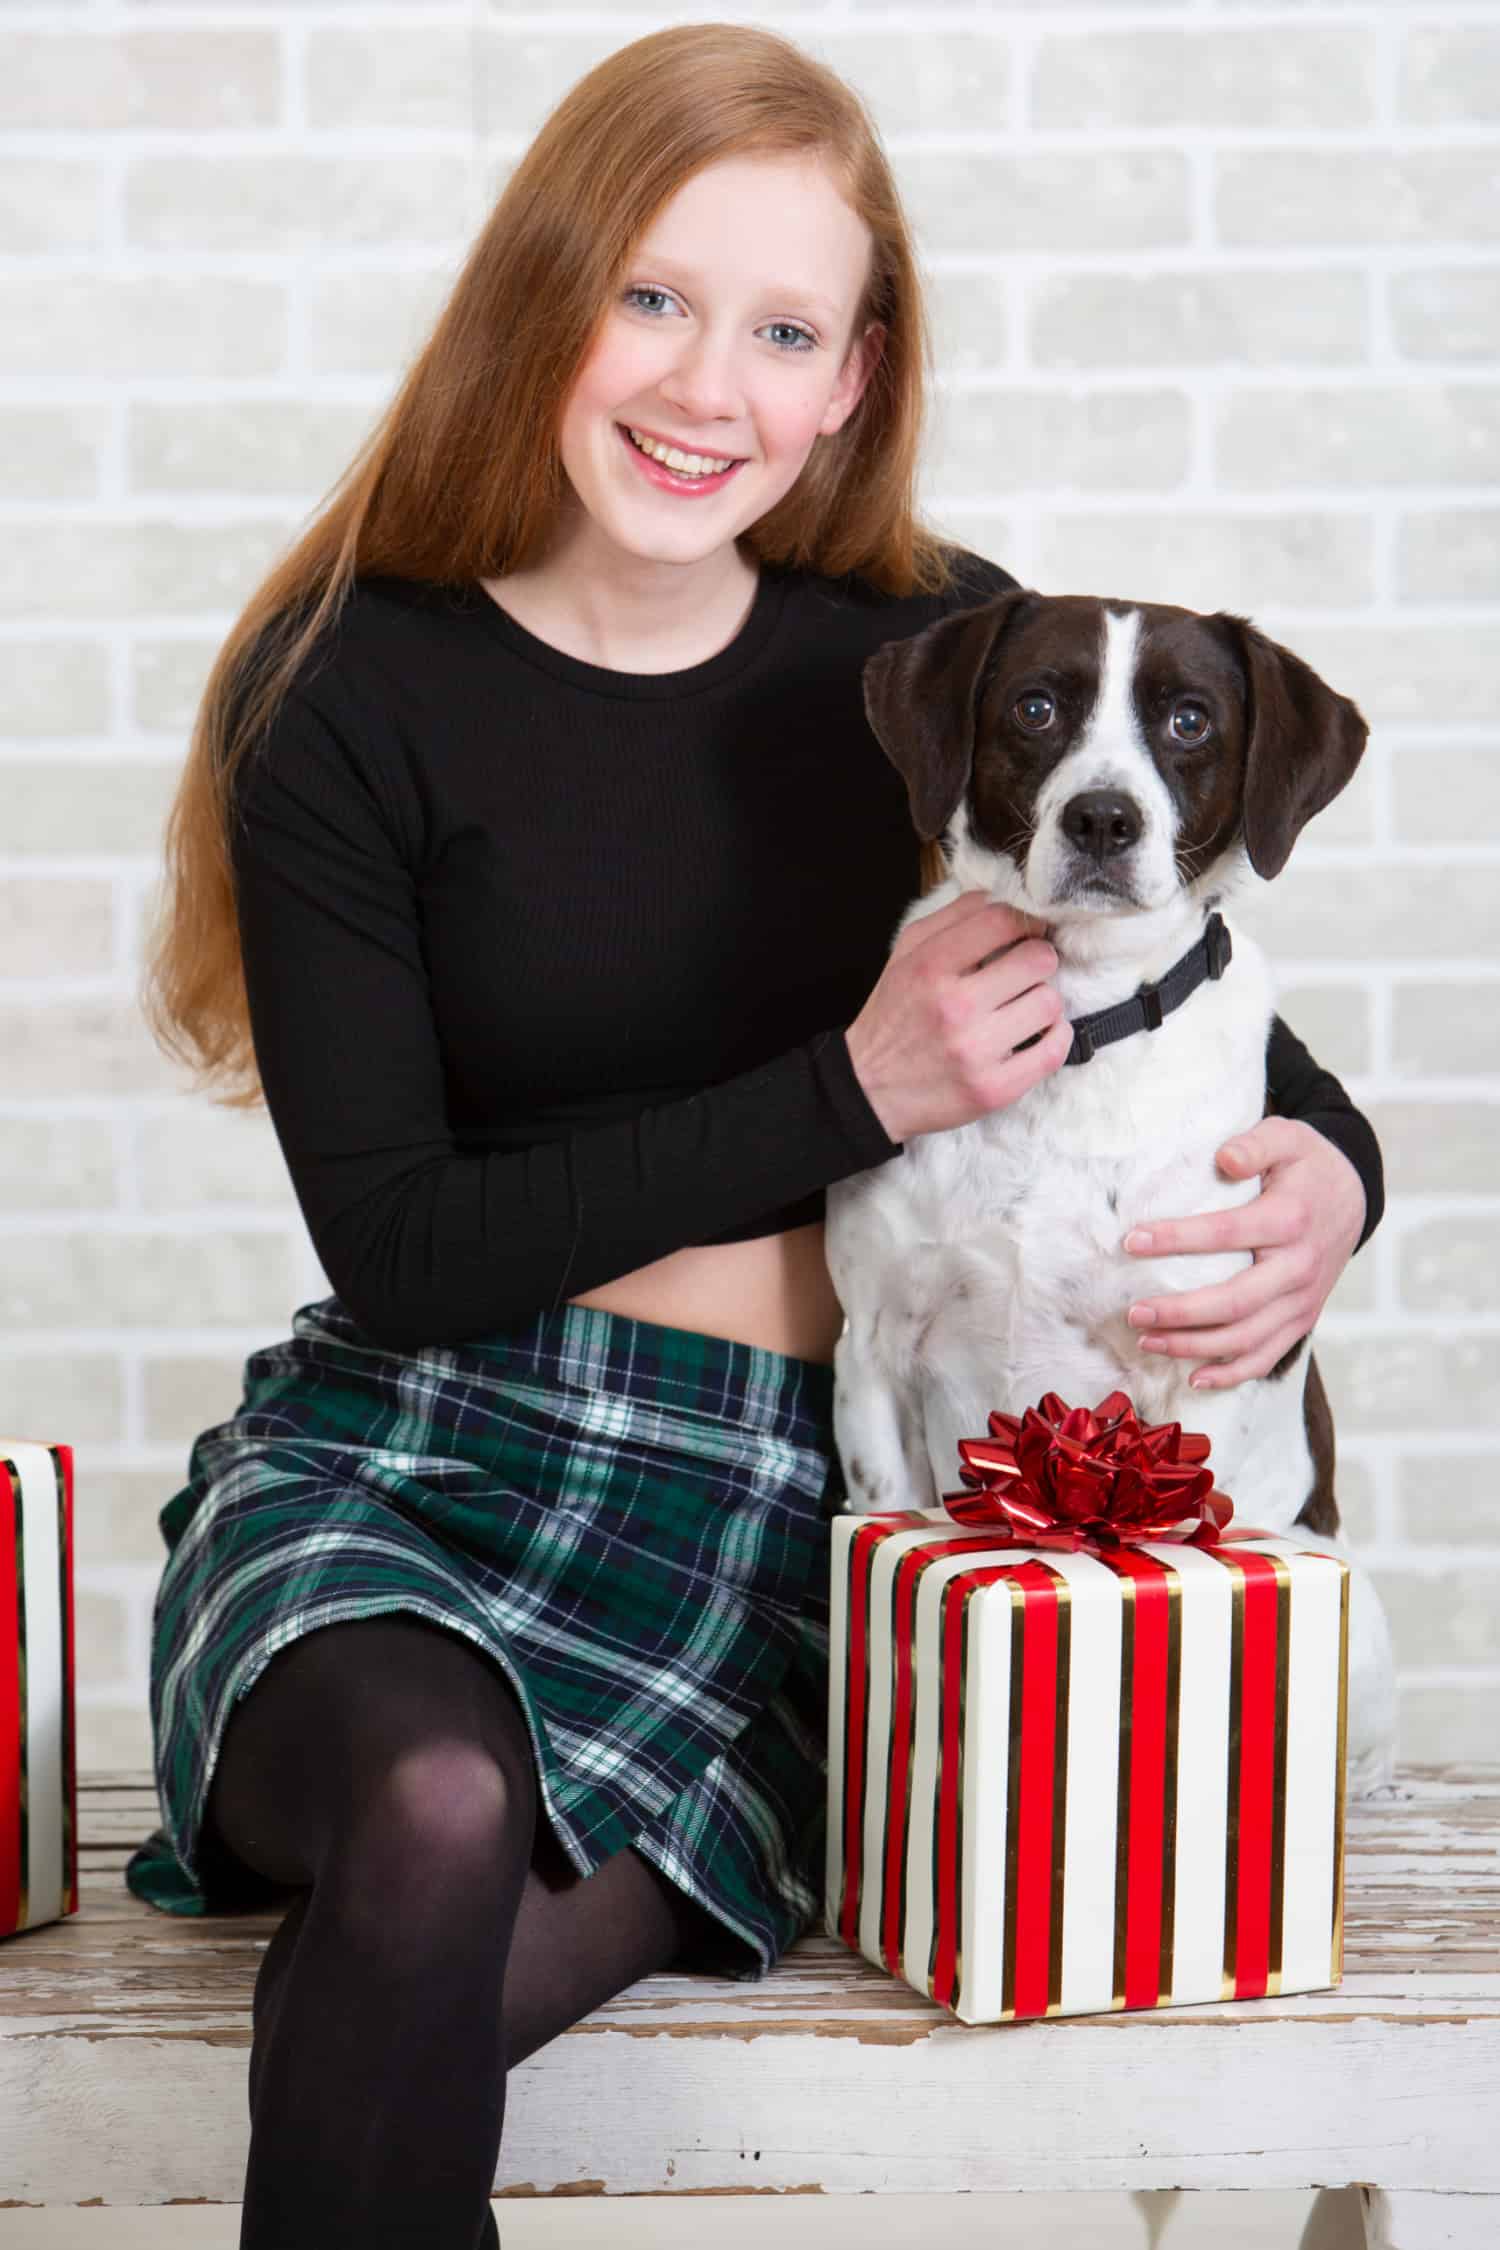 Teen girl giving a Christmas gift to her dog